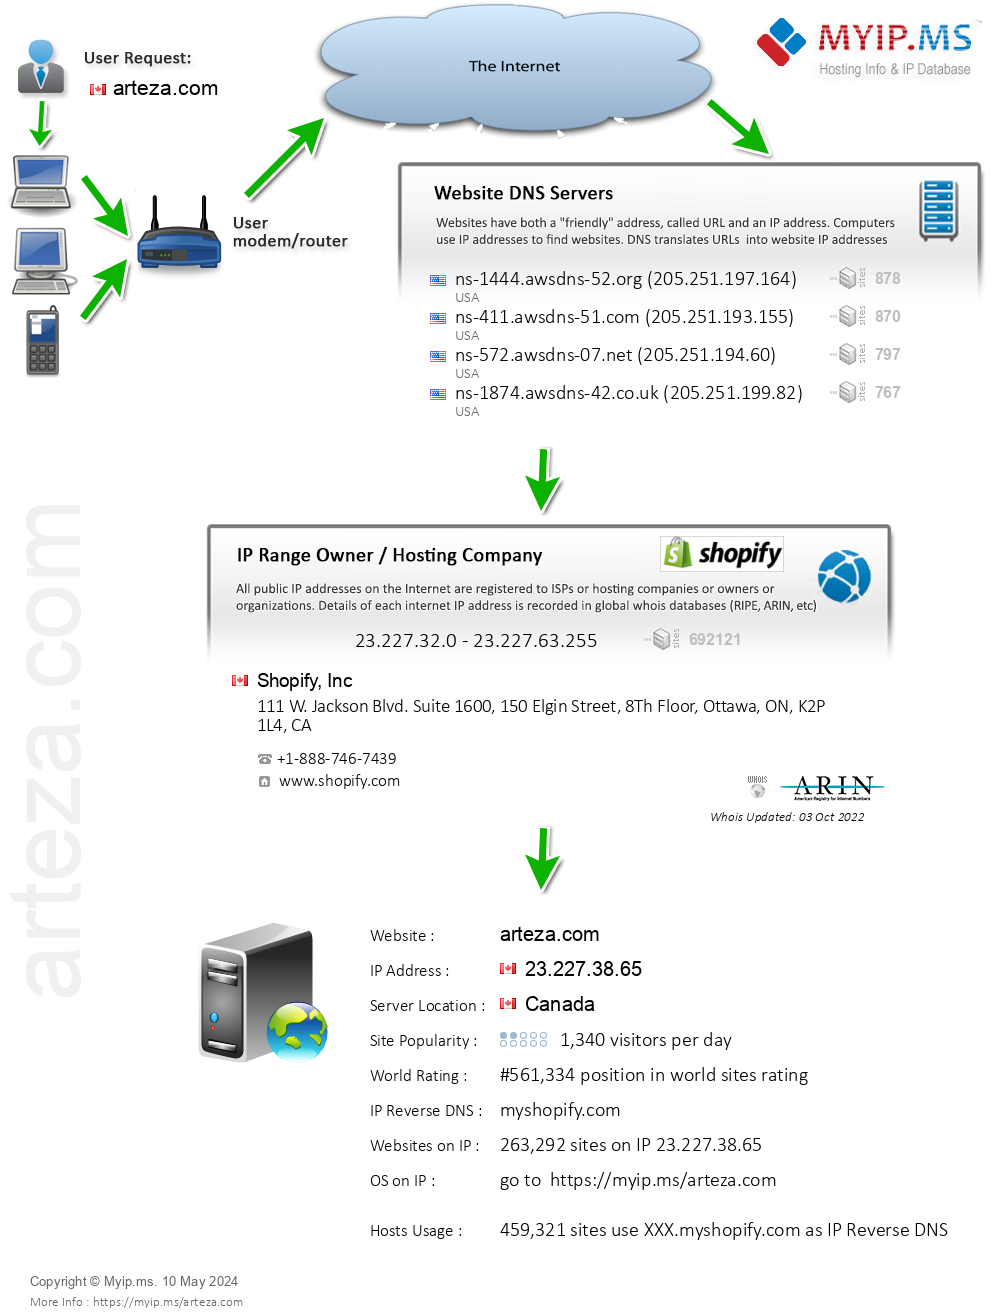 Arteza.com - Website Hosting Visual IP Diagram